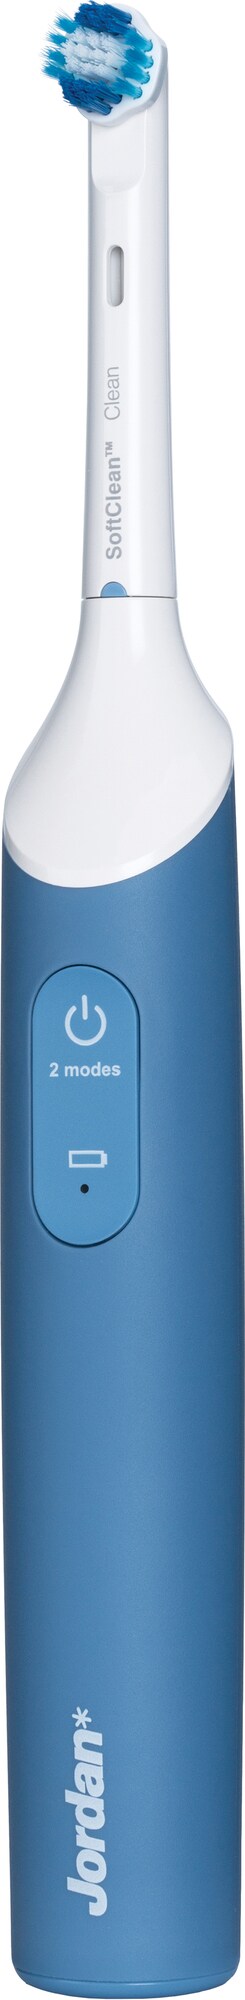 Jordan TBX-300B Jordan Smile Plus elektrisk tannbørste (blå) - Elektriske  tannbørster - Elkjøp